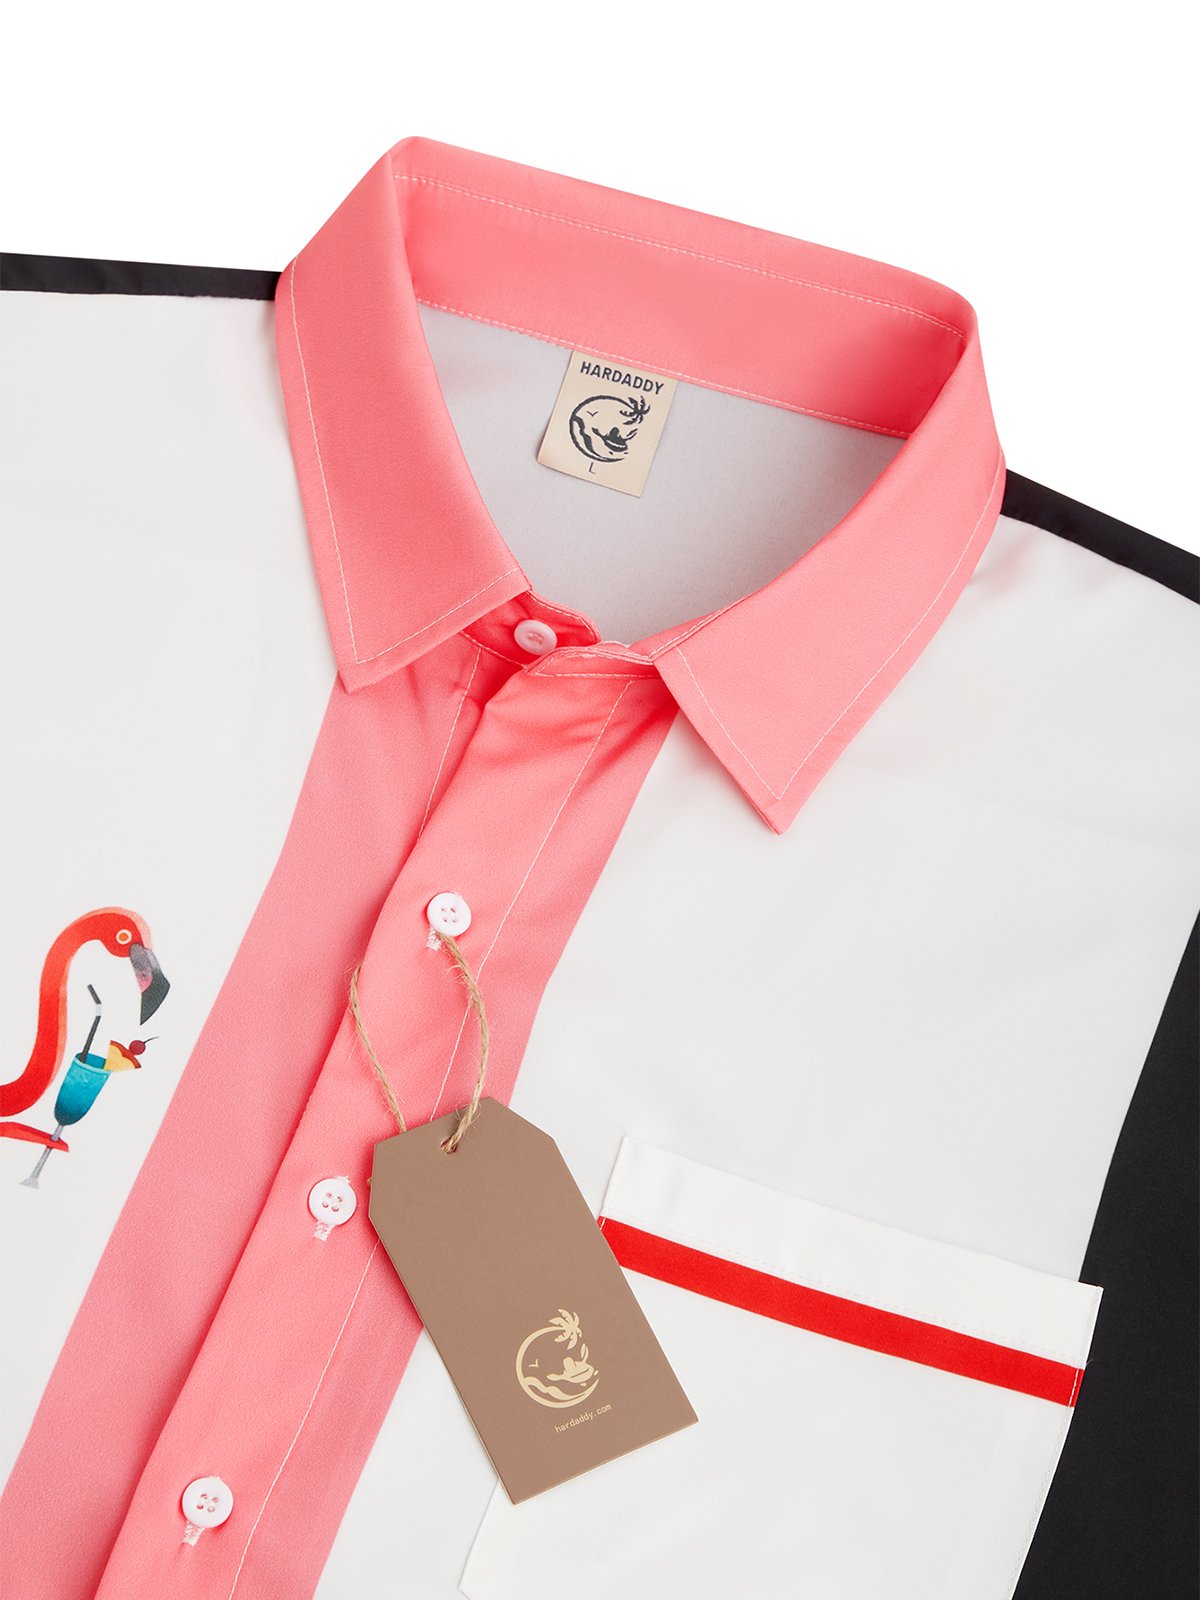 Hardaddy Flamingo Chest Pocket Short Sleeve Bowling Shirt